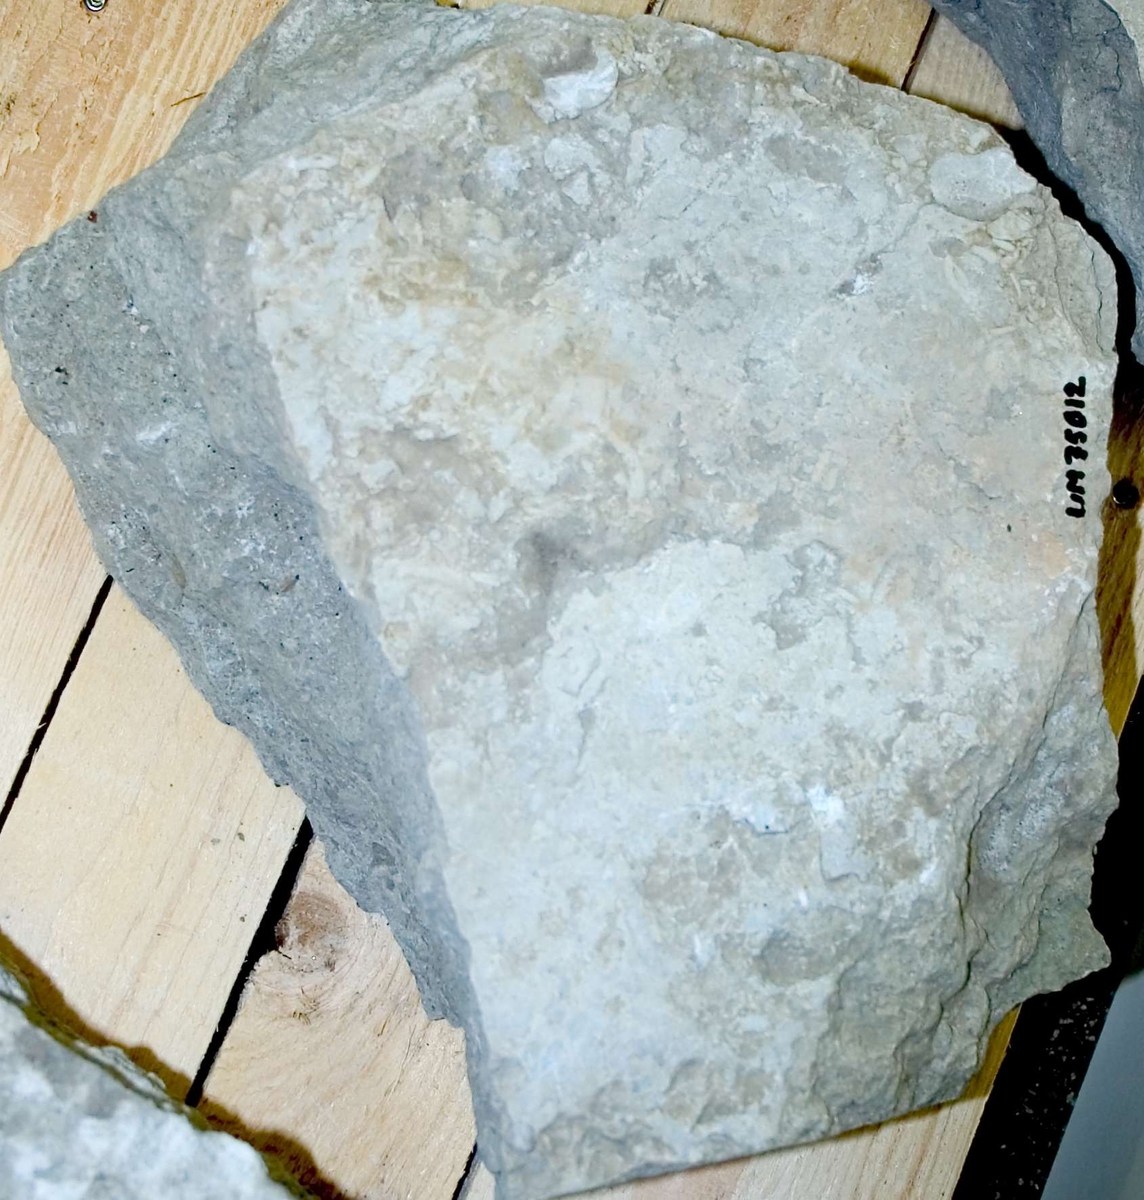 Två fragment av kalksten, sannolikt delar till gravhäll.  Del 1: längd 37 cm, bredd 30 cm, höjd 15 cm. Del 2: längd 40 cm, bredd 30 cm, höjd 15 cm. 